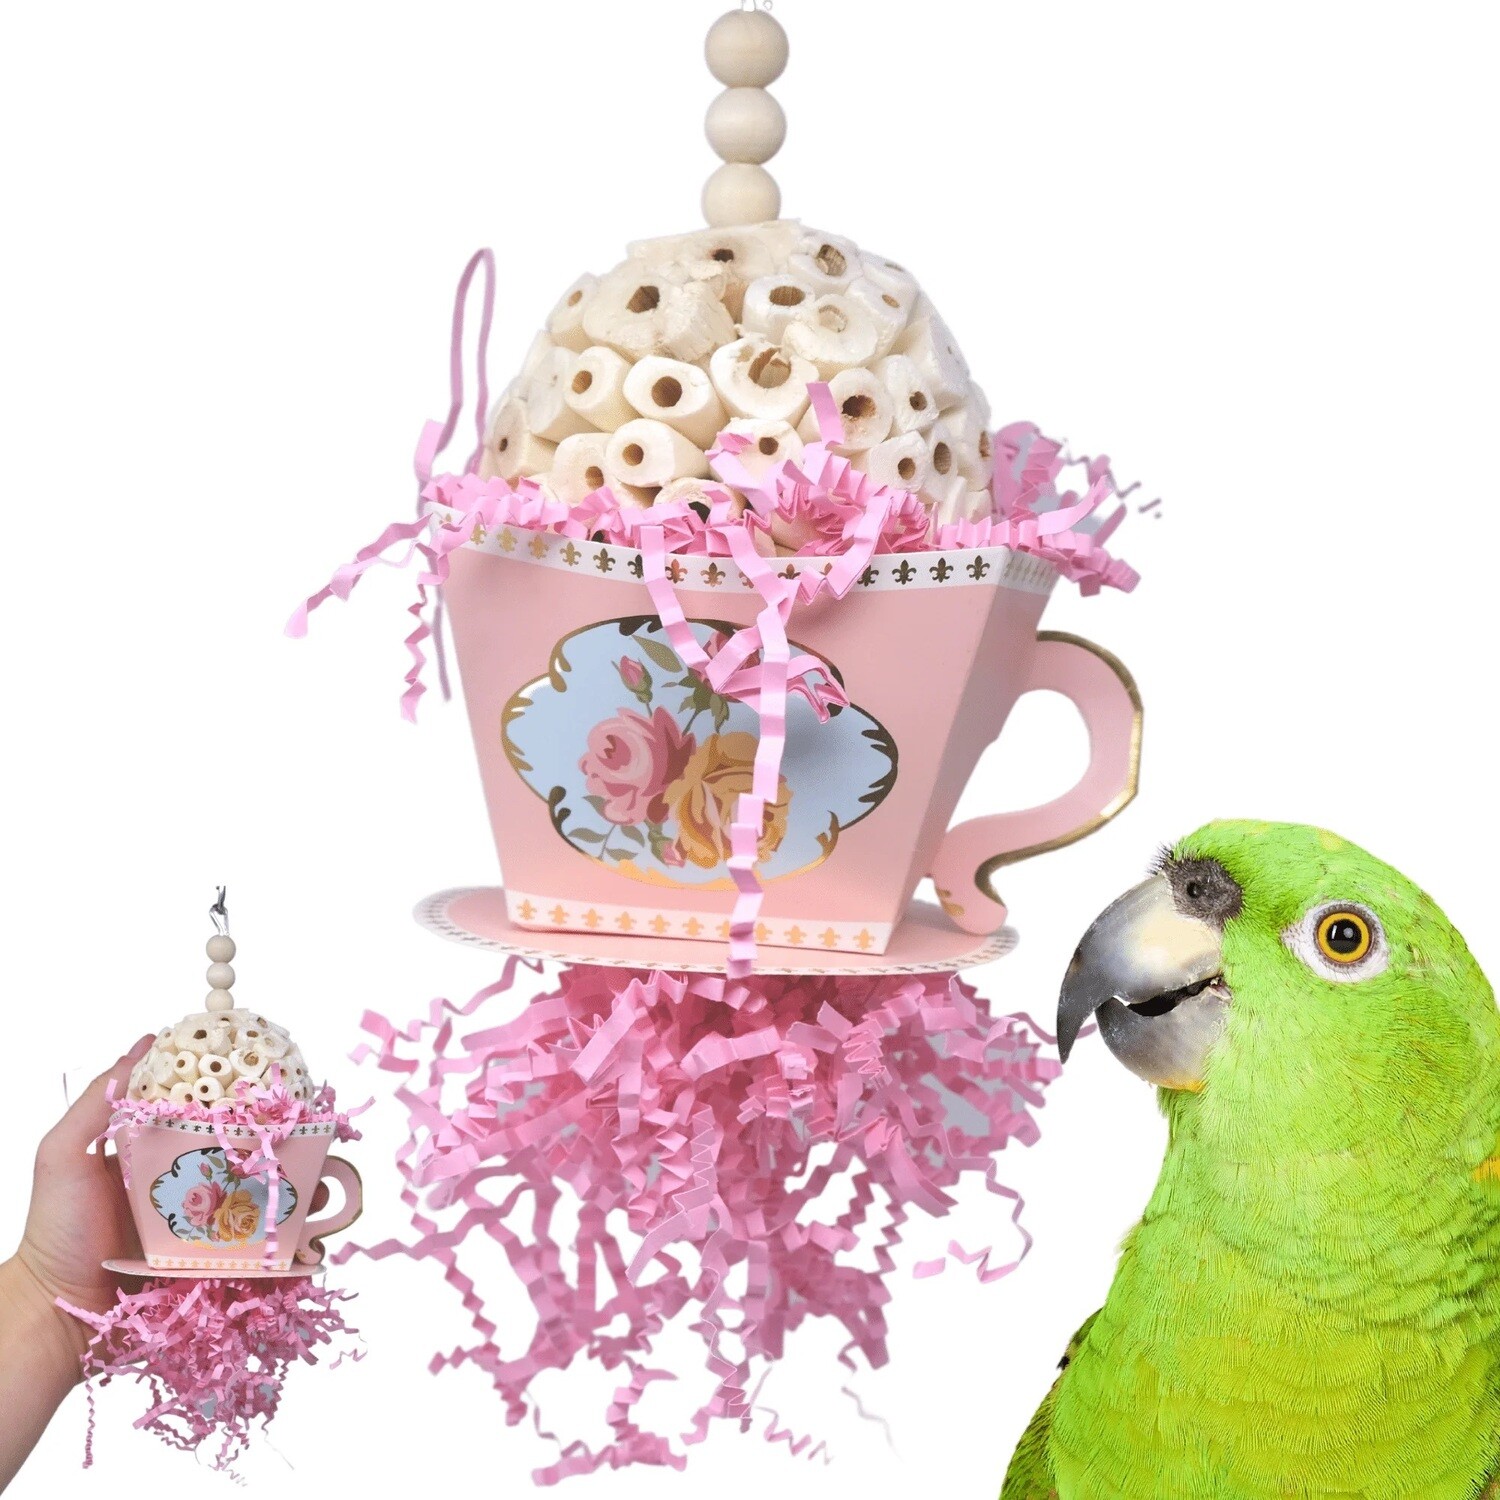 Sola Teacup Toy by Bonka Bird Toys - Pink